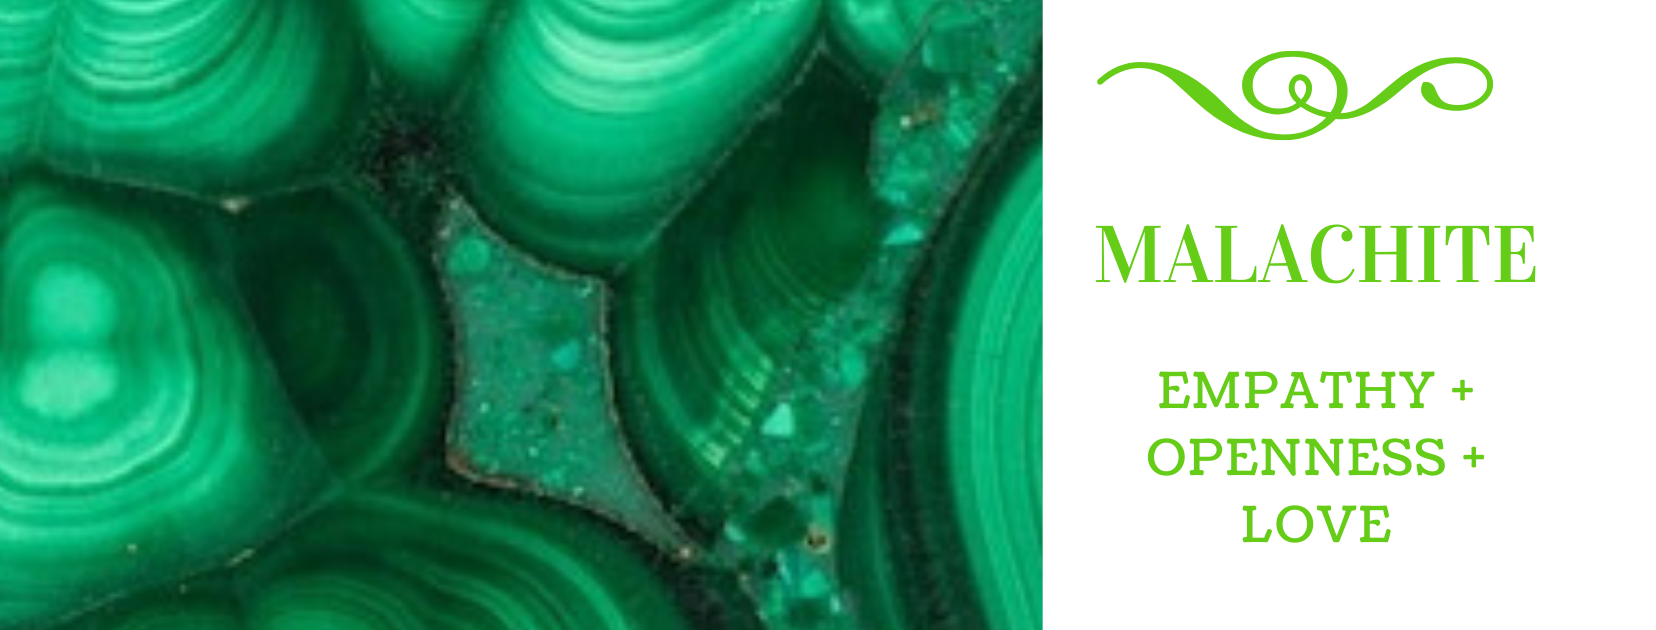 Propiedades curativas de la malaquita | Malaquita Significado | Beneficios de la Malaquita - Cristales Mágicos